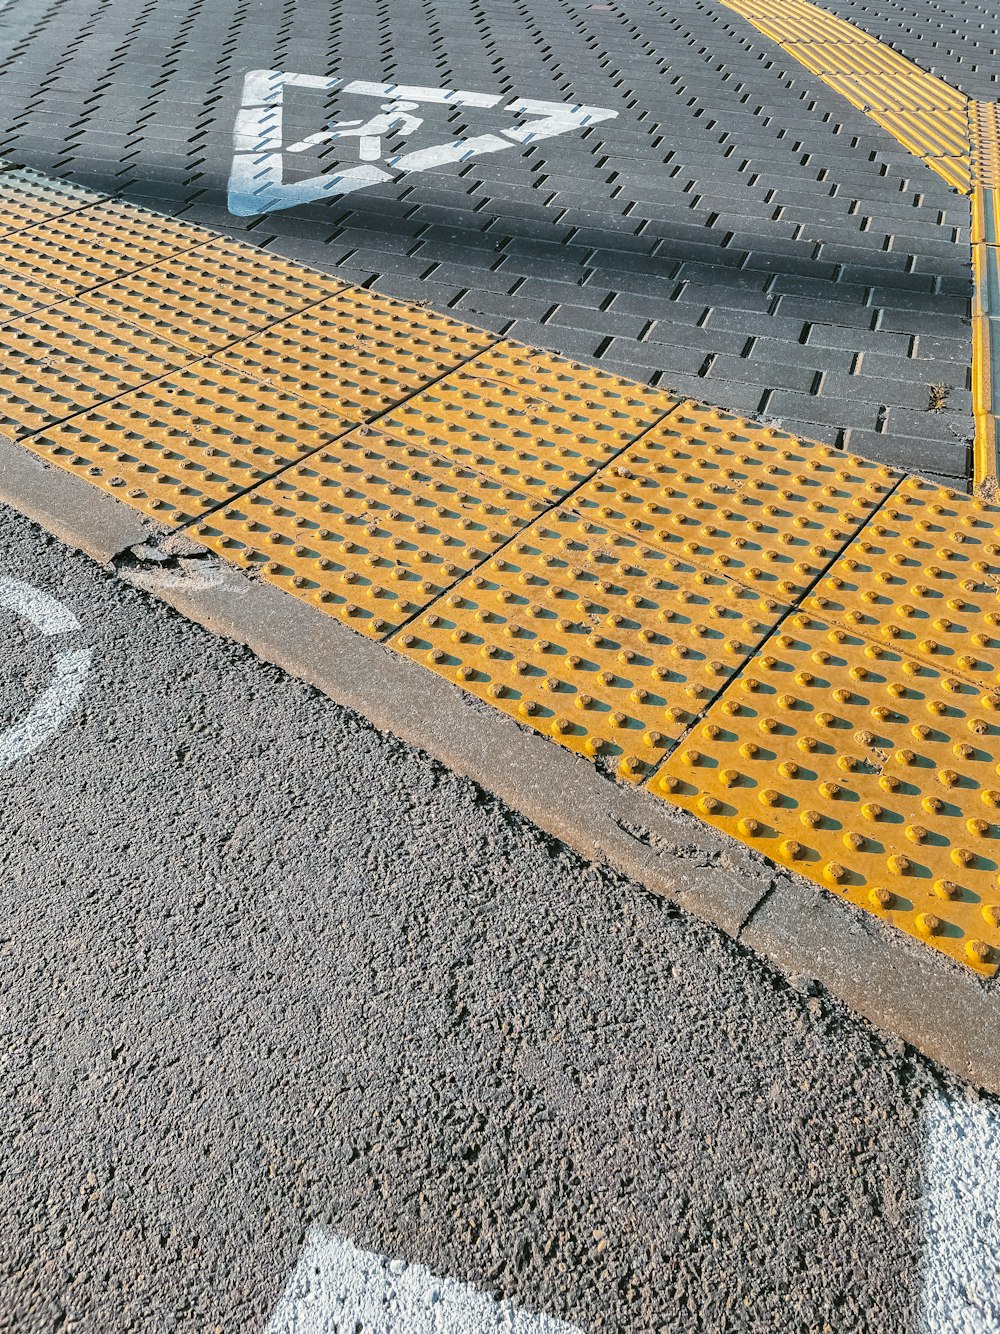 Una señal de alto amarilla al costado de una carretera